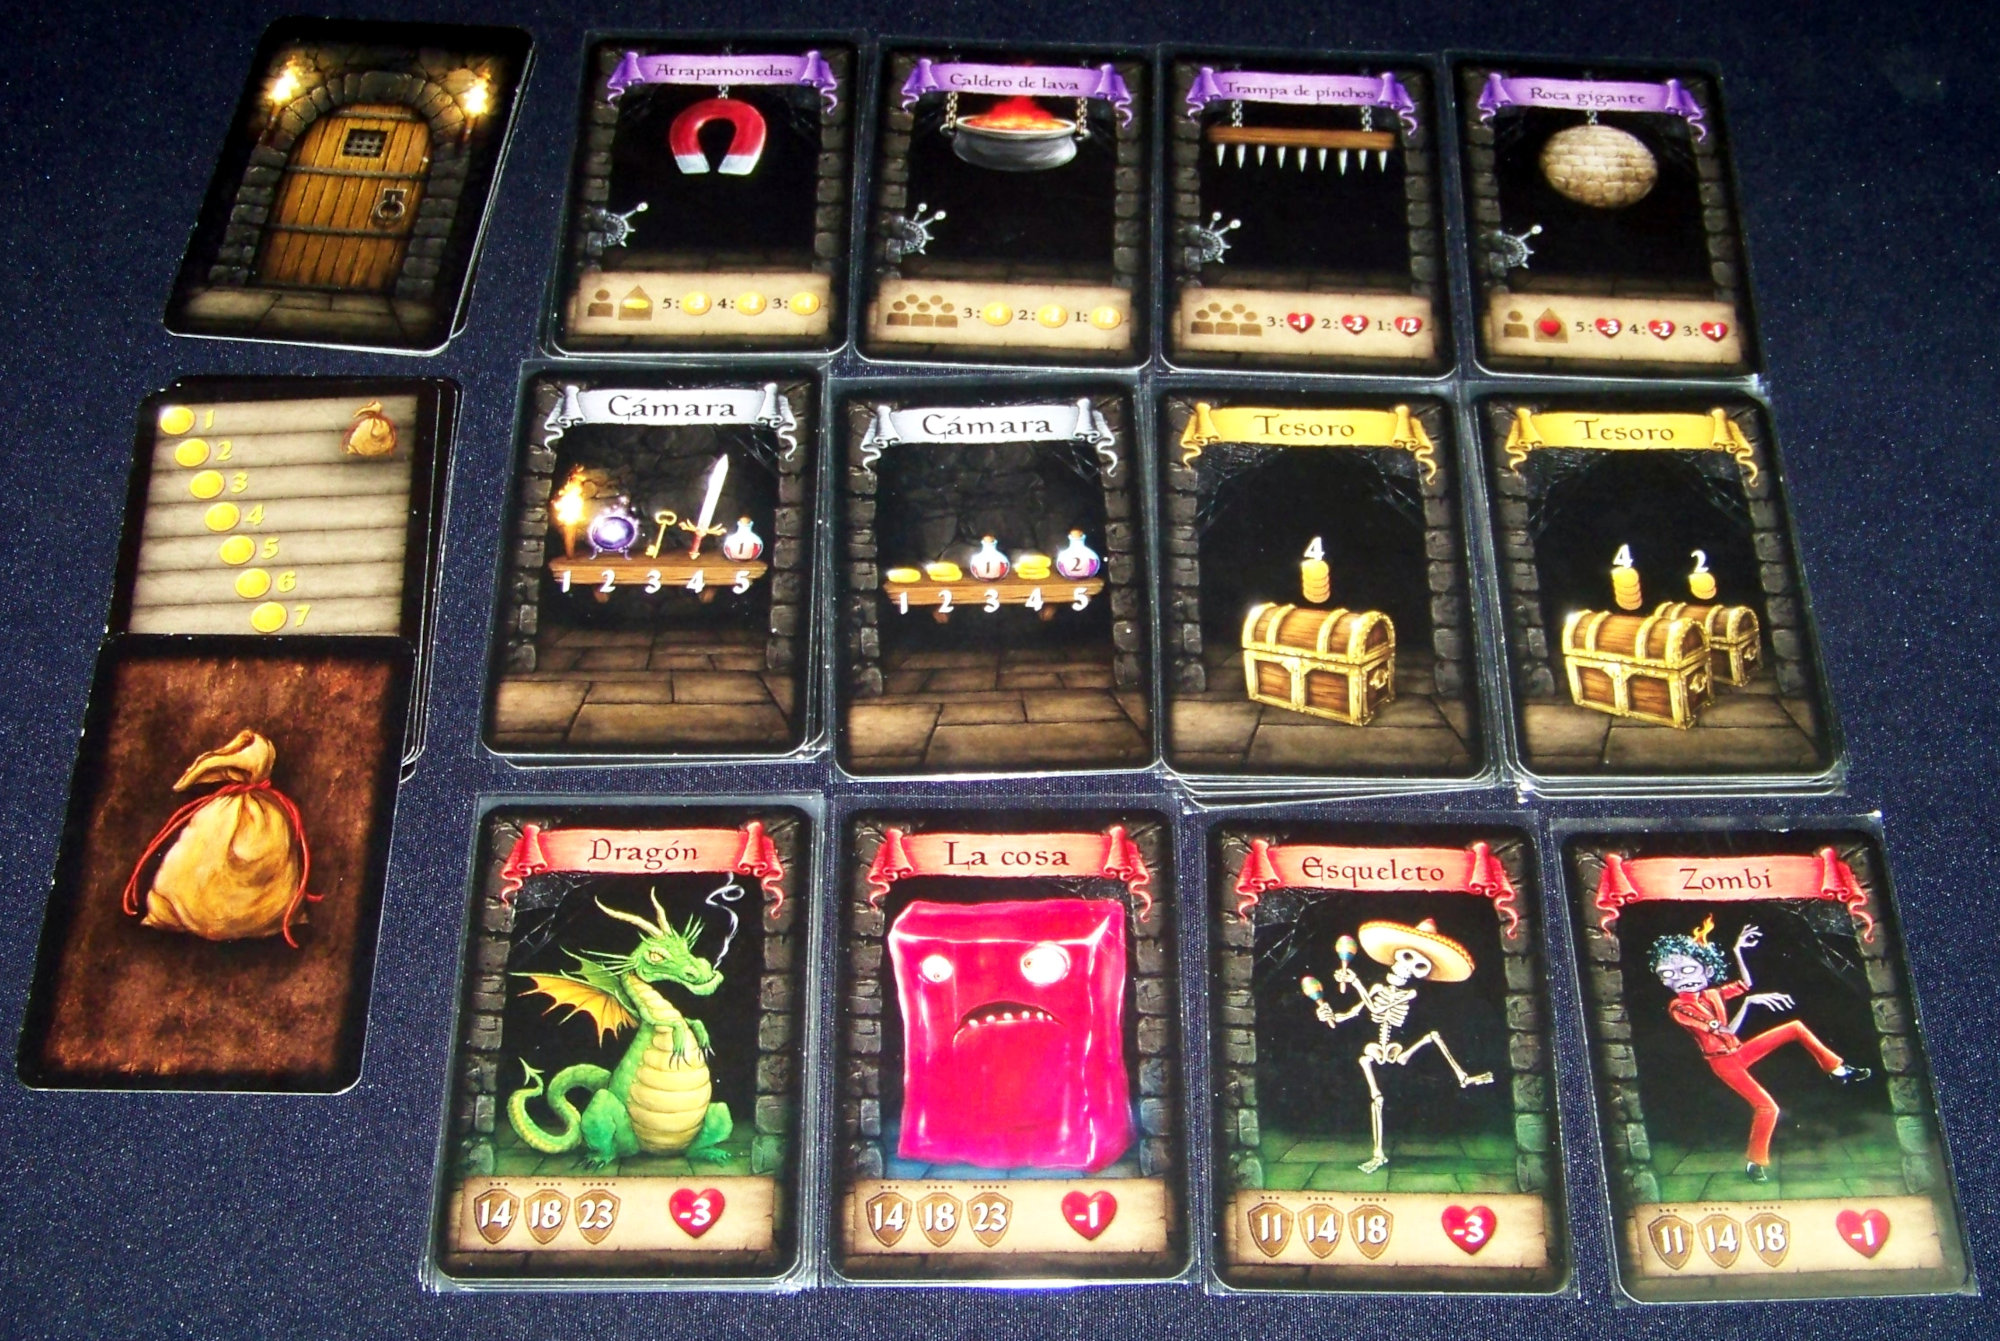 Juego de mesa Dungeon Raiders - cartas de habitaciones (ejemplos por tipo), monedas y puertas.